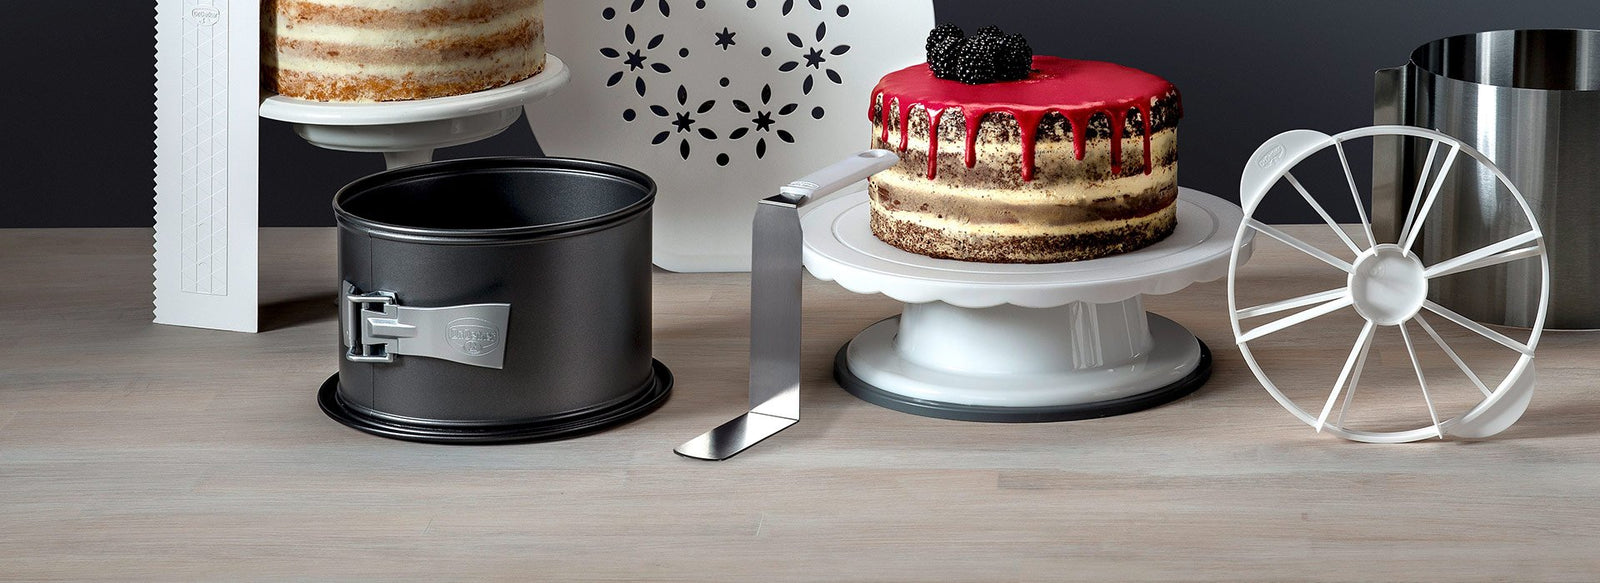 Moule à pâtisserie en aluminium - Layer Cake - 20 cm - Moules inox - Creavea